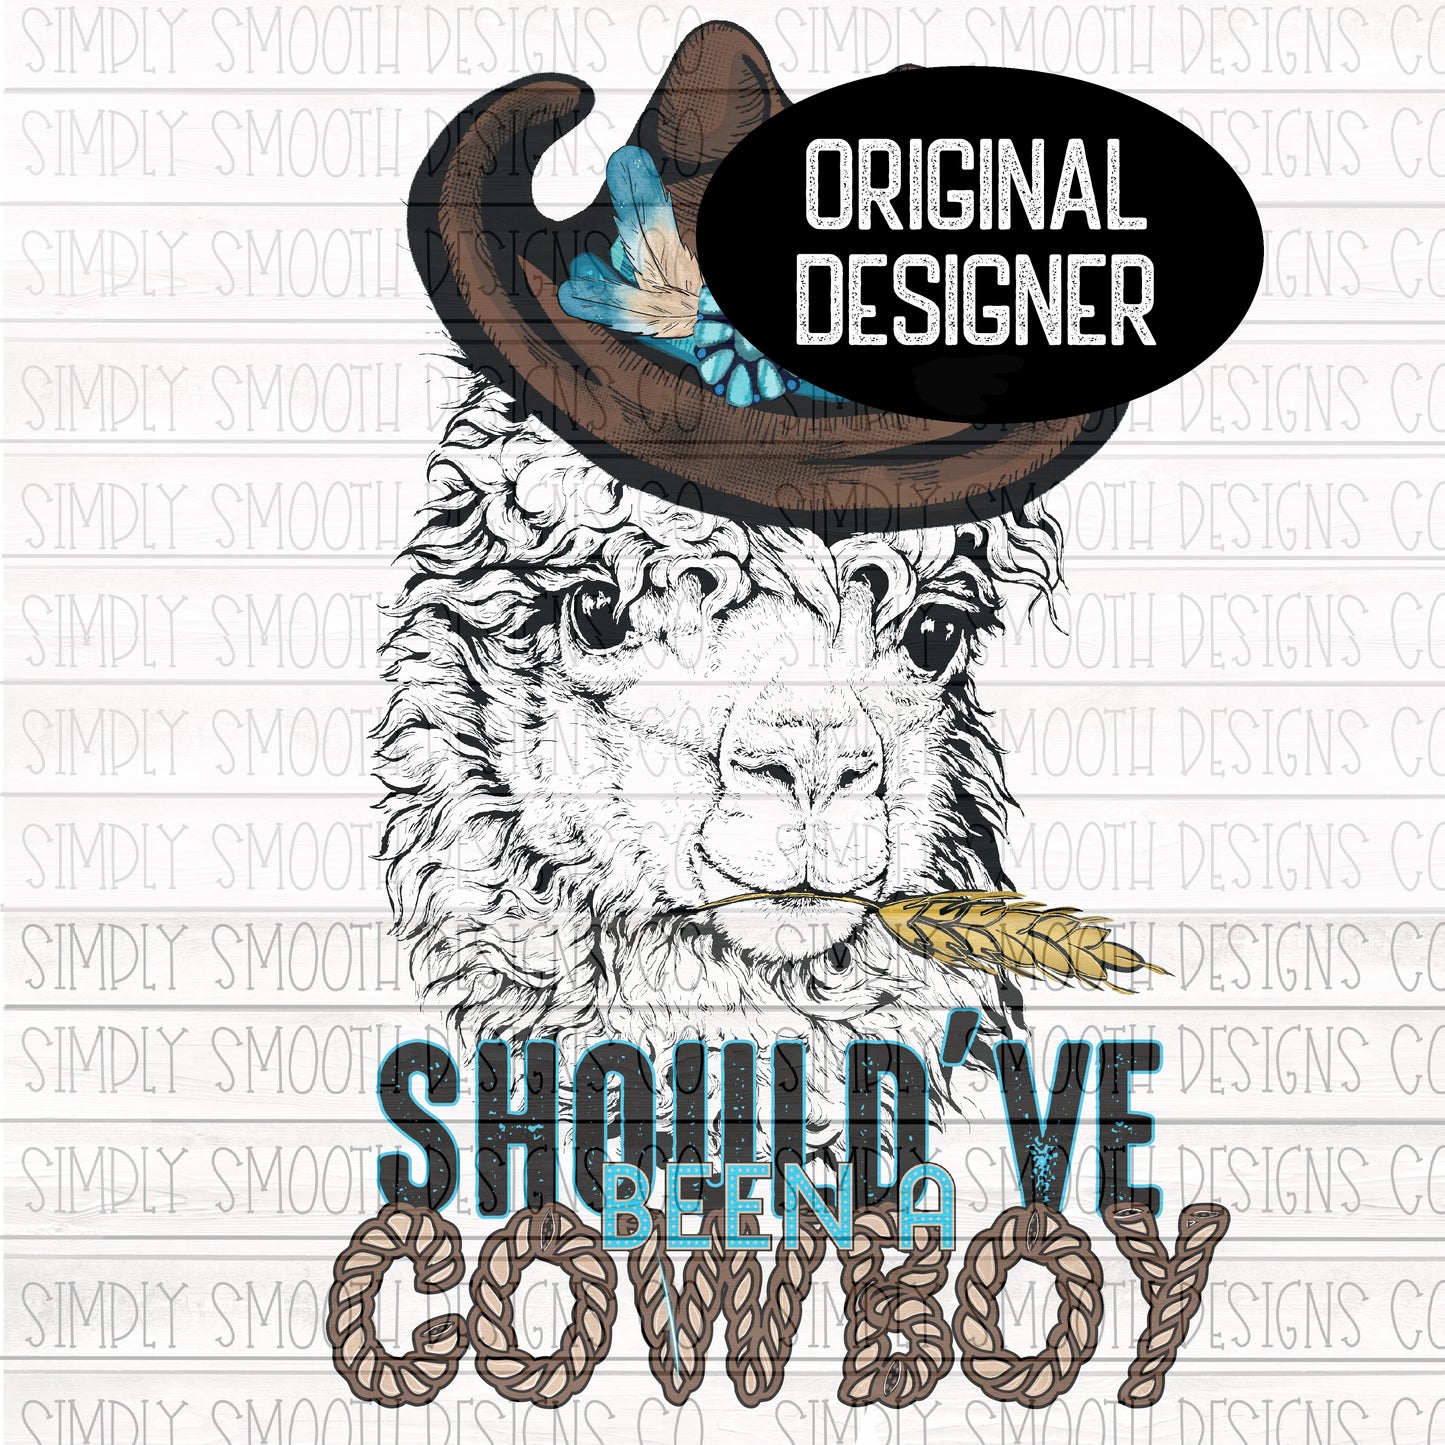 Should’ve been a cowboy llama